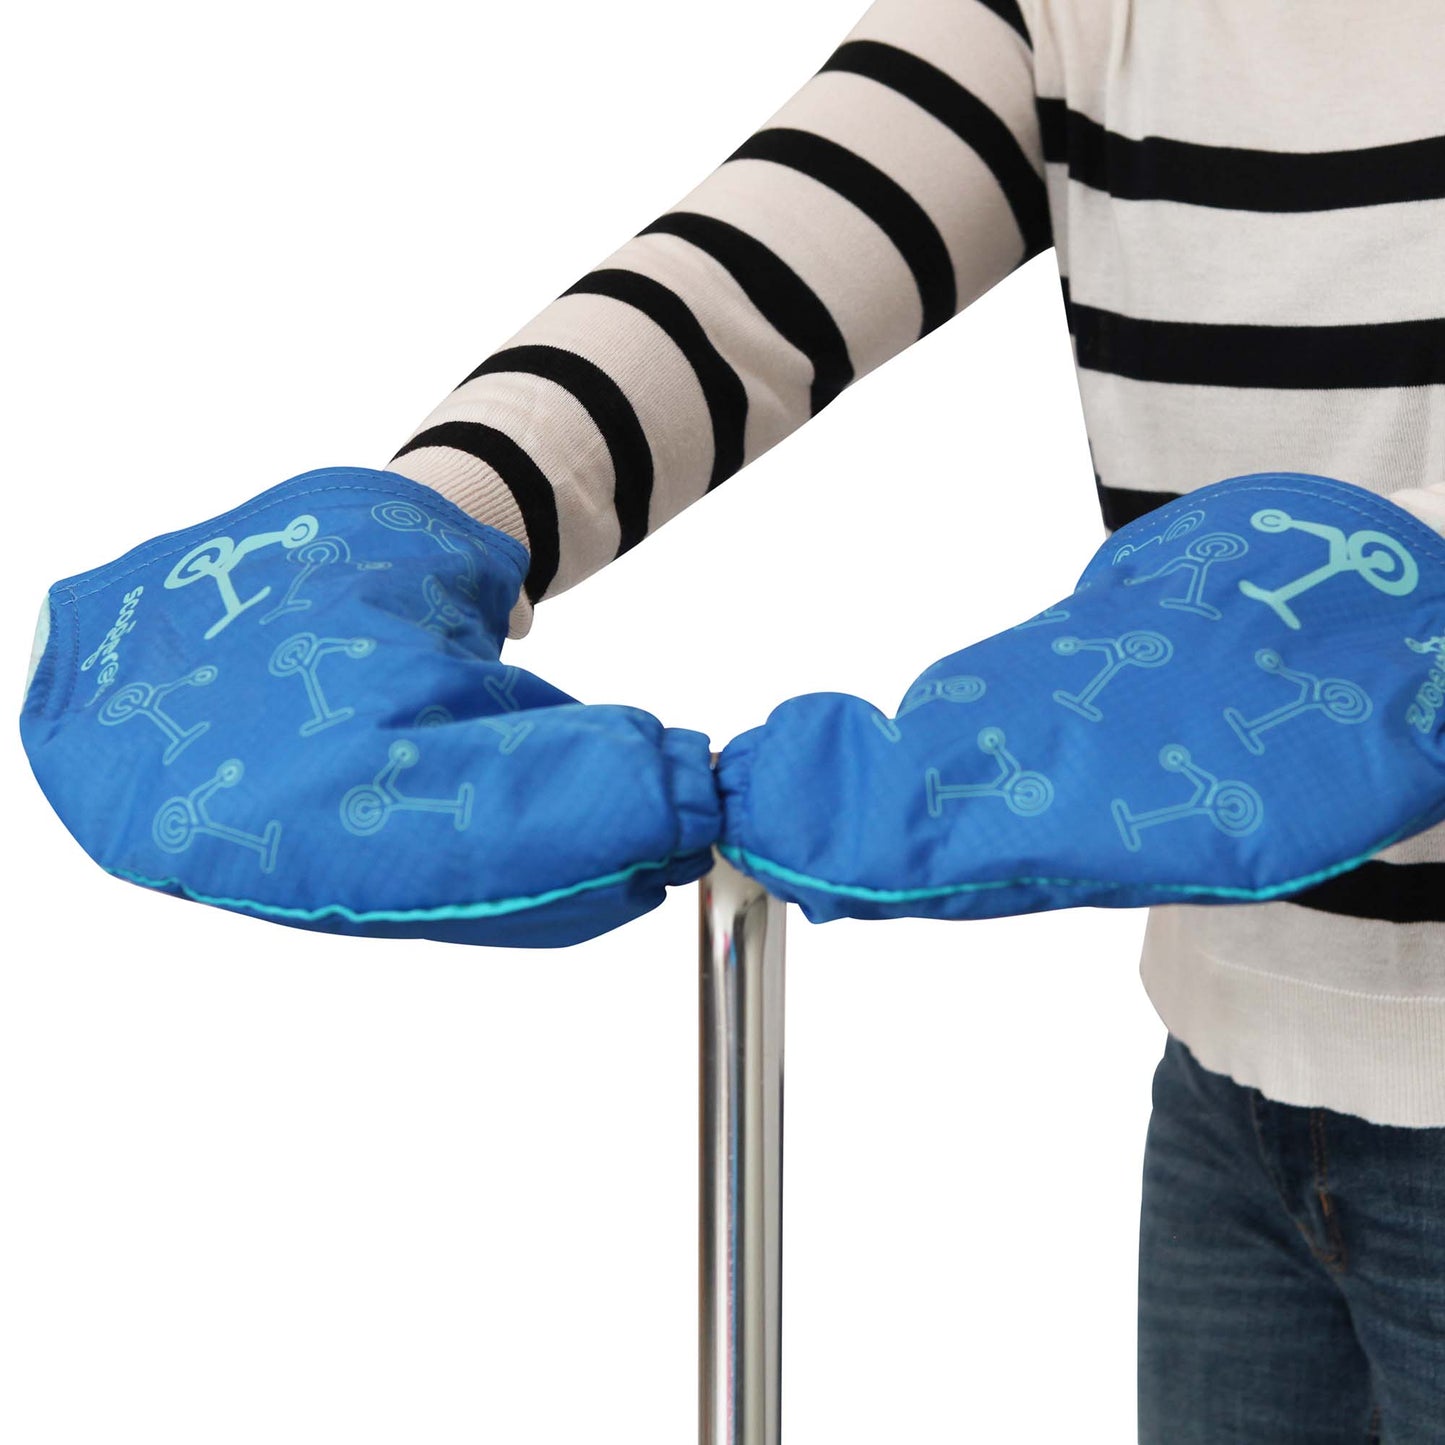 Blue Scooterearz Hand warmers